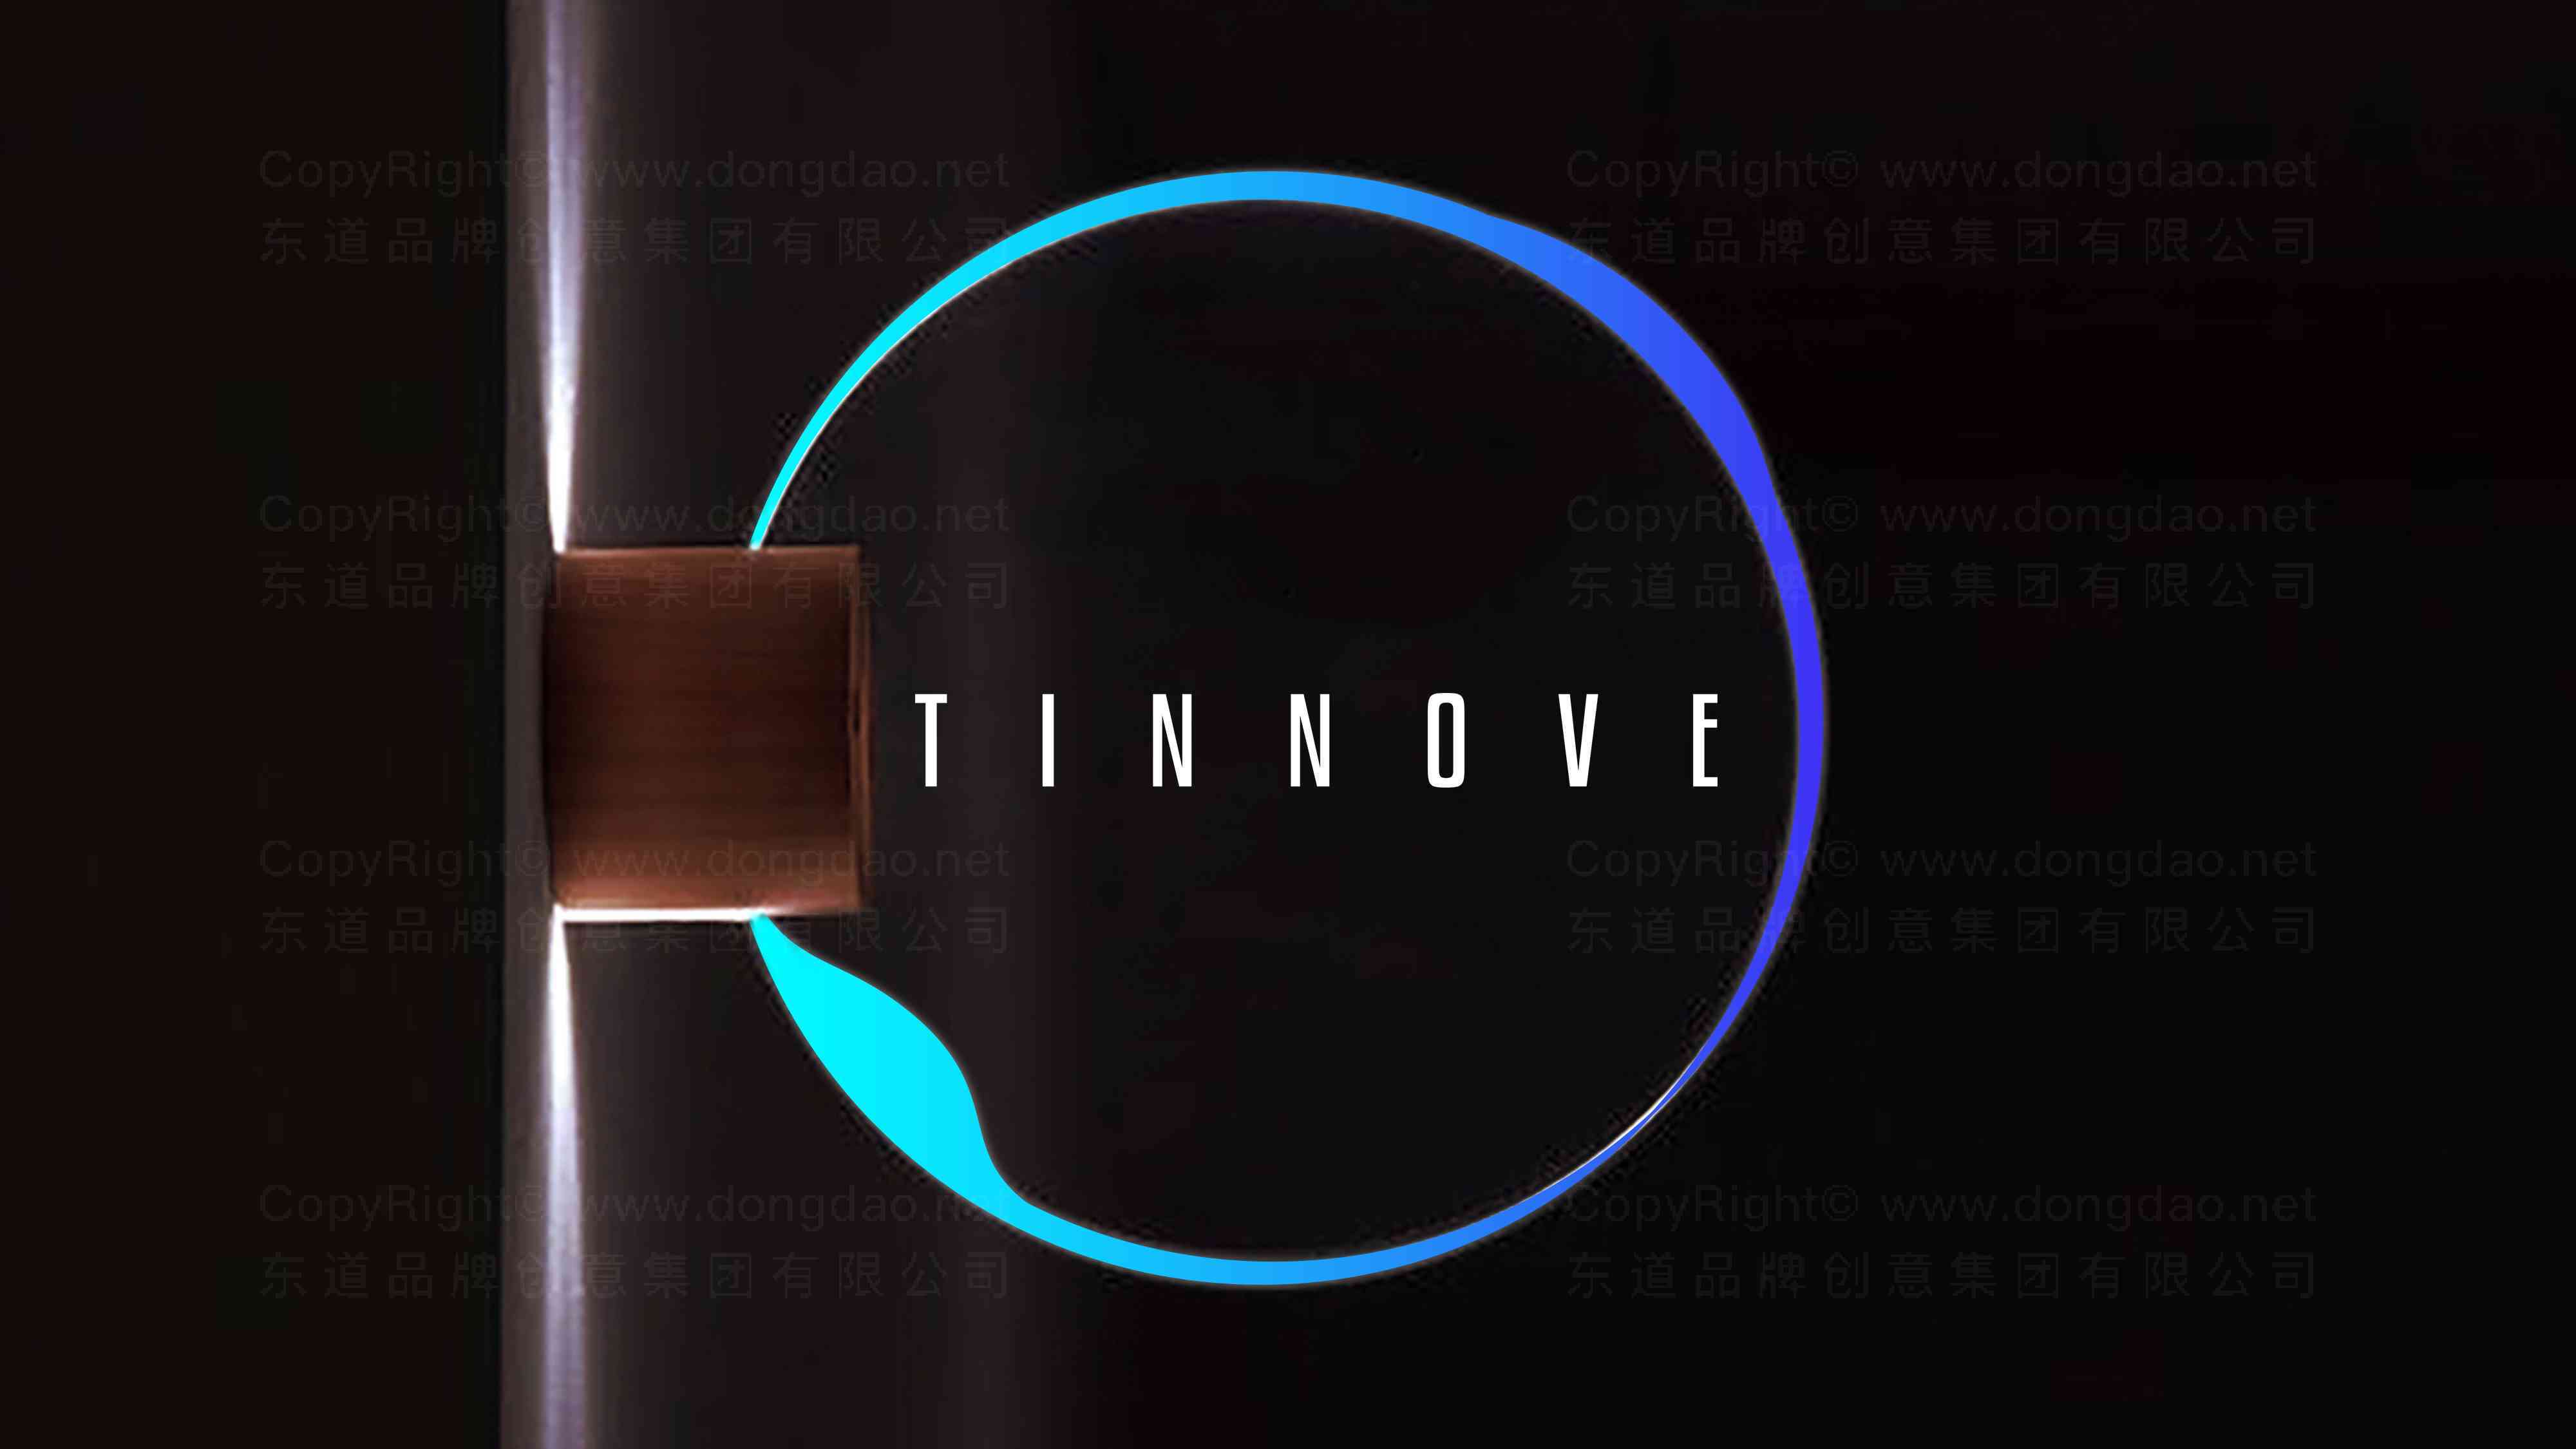 TINNOVE汽车智能系统汽车行业logo设计图片素材_5